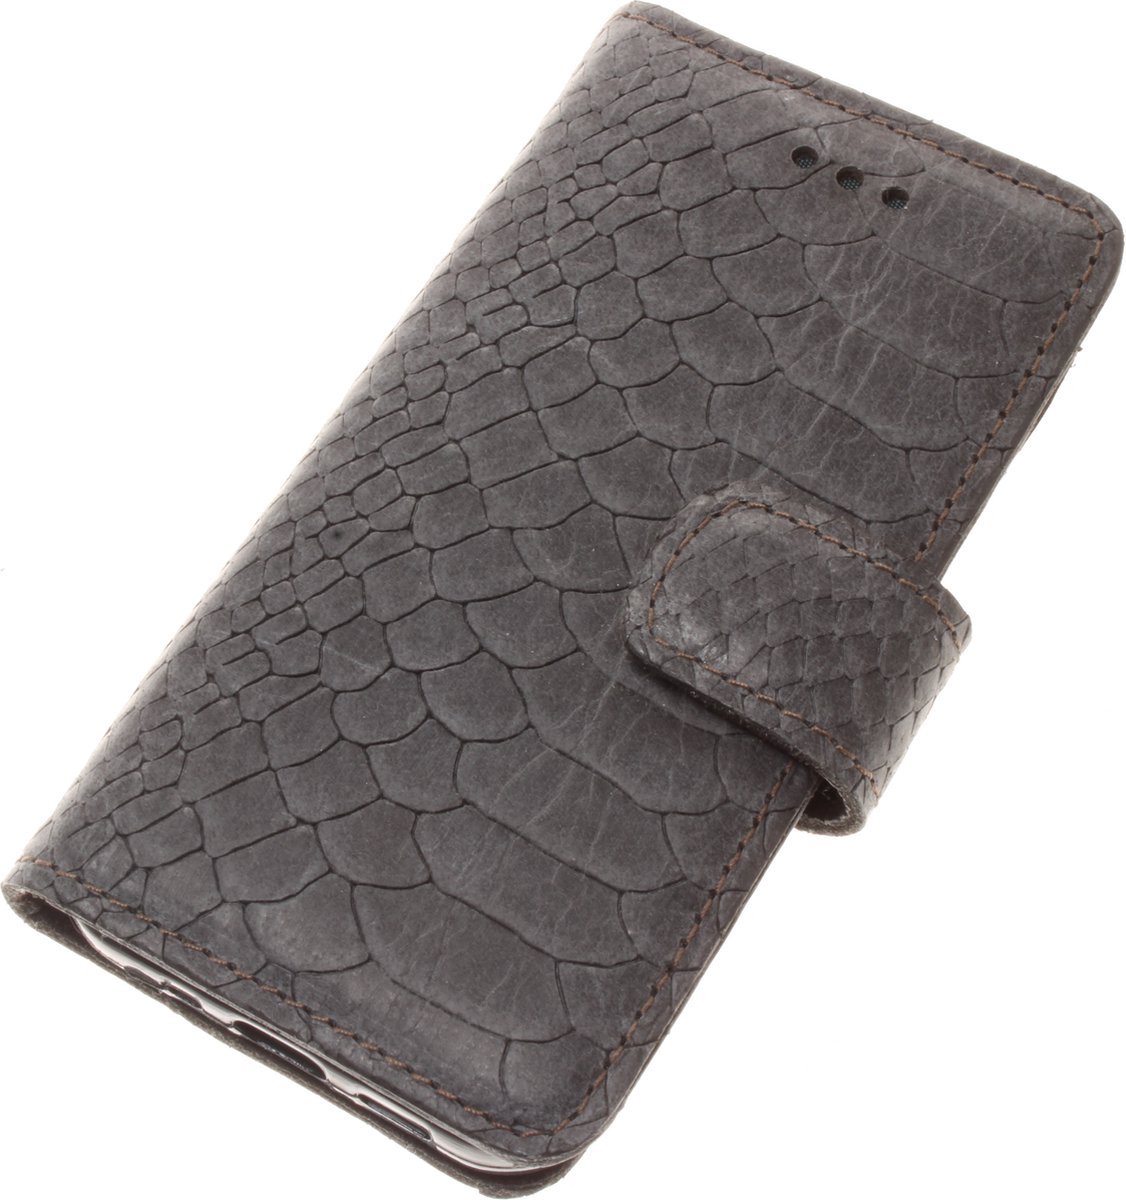 Made-NL Apple iPhone 11 Pro Handgemaakte book case antraciet slangenprint leer robuuste hoesje